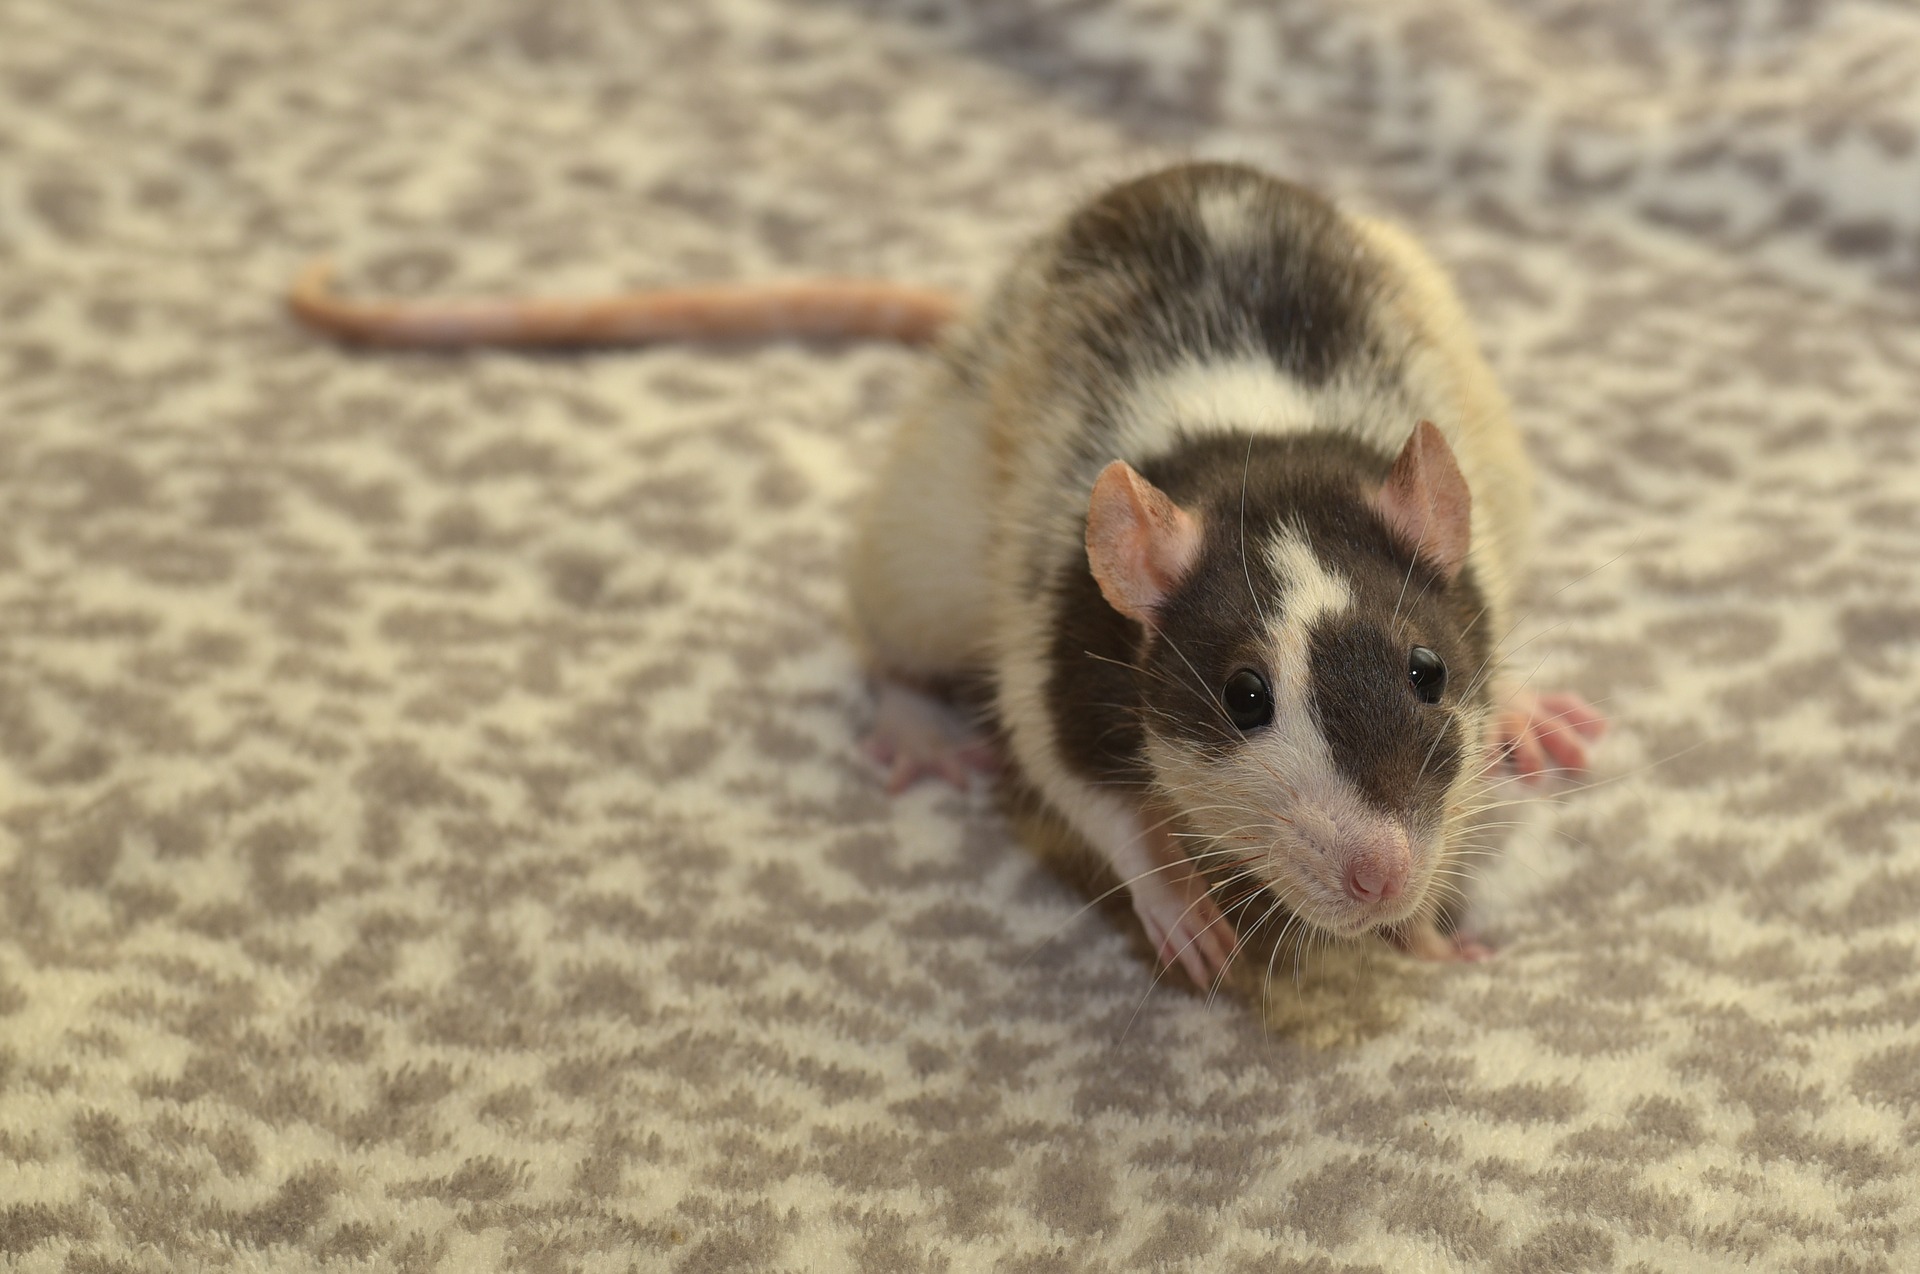 Quels sont les besoins en eau d'une souris domestique ?